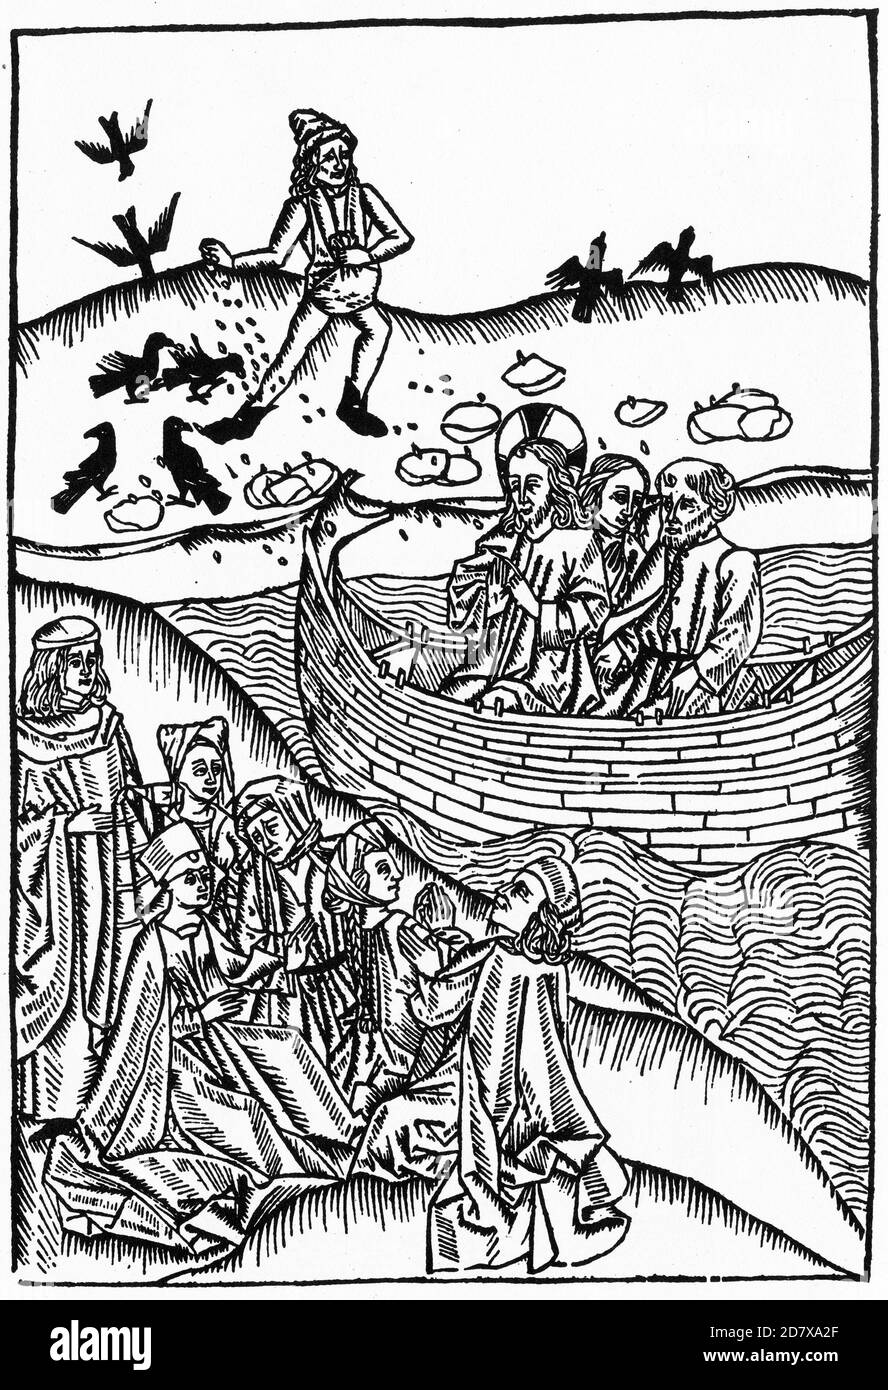 Taglio medievale di legno di Gesù che predica dalla nave, mentre il seminatore sta seminando seme sullo sfondo, probabilmente del 1400 Foto Stock